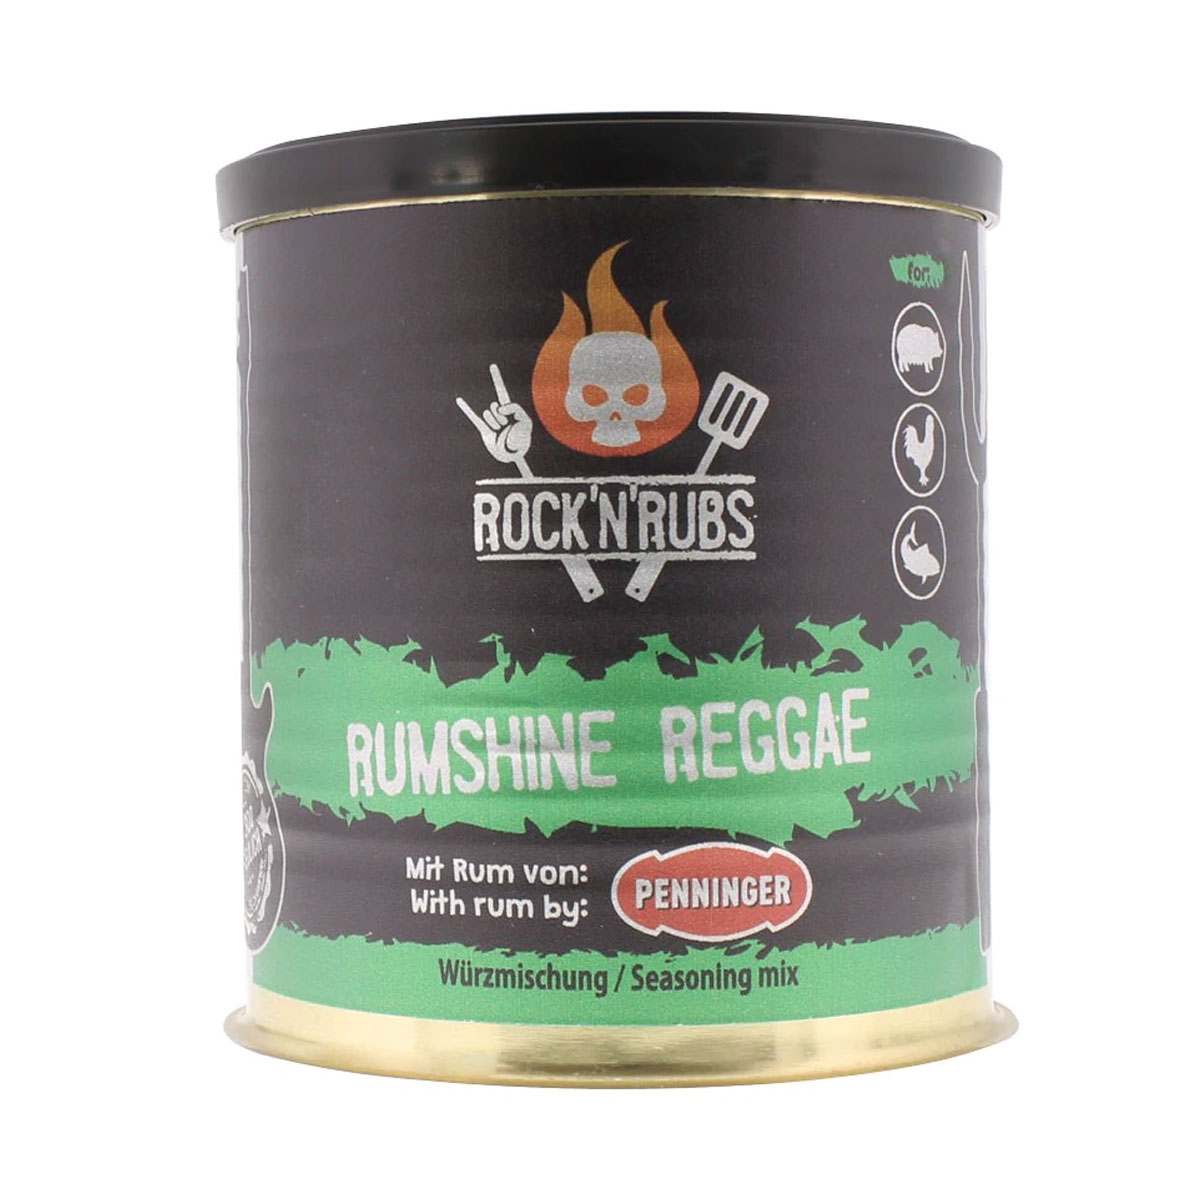 Rock'n'Rubs "Rumshine Reggae" Silver Line Rub, 90g